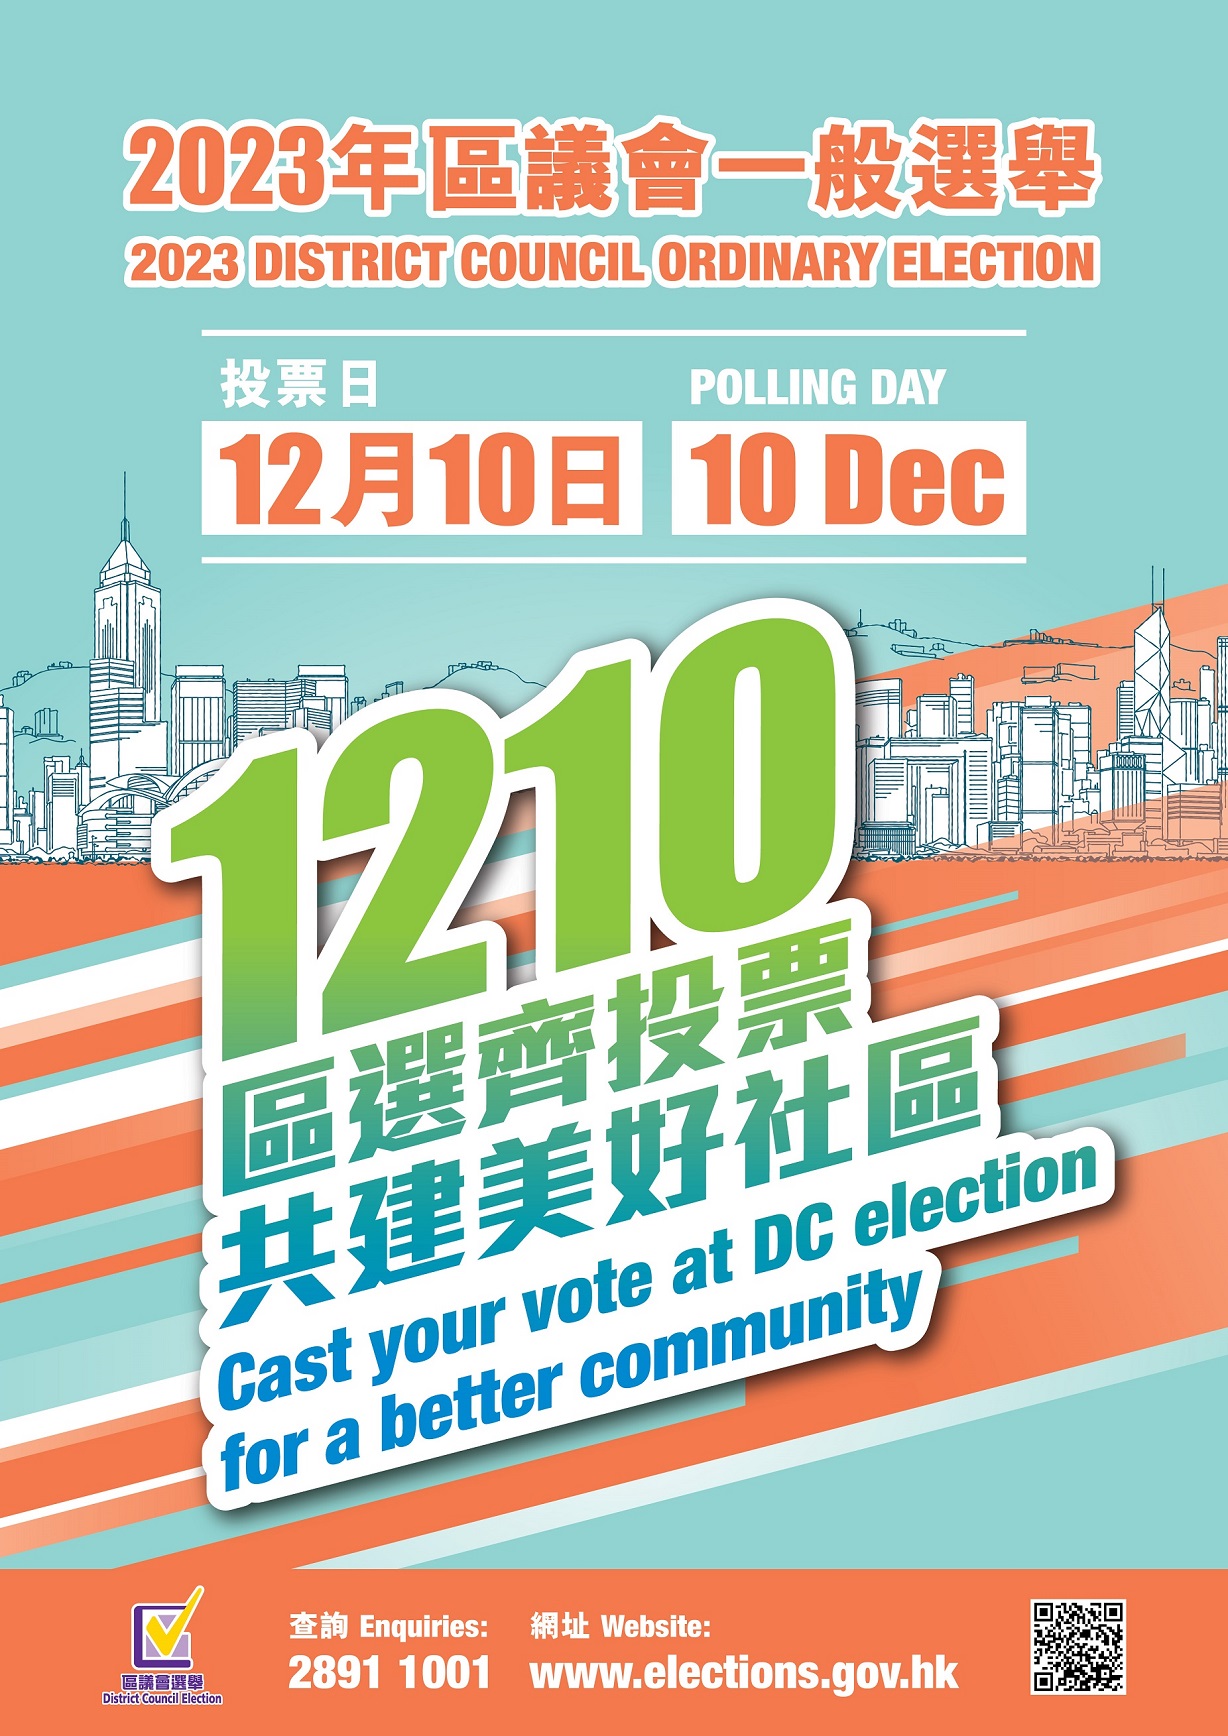 2023年區議會一般選舉-投票日